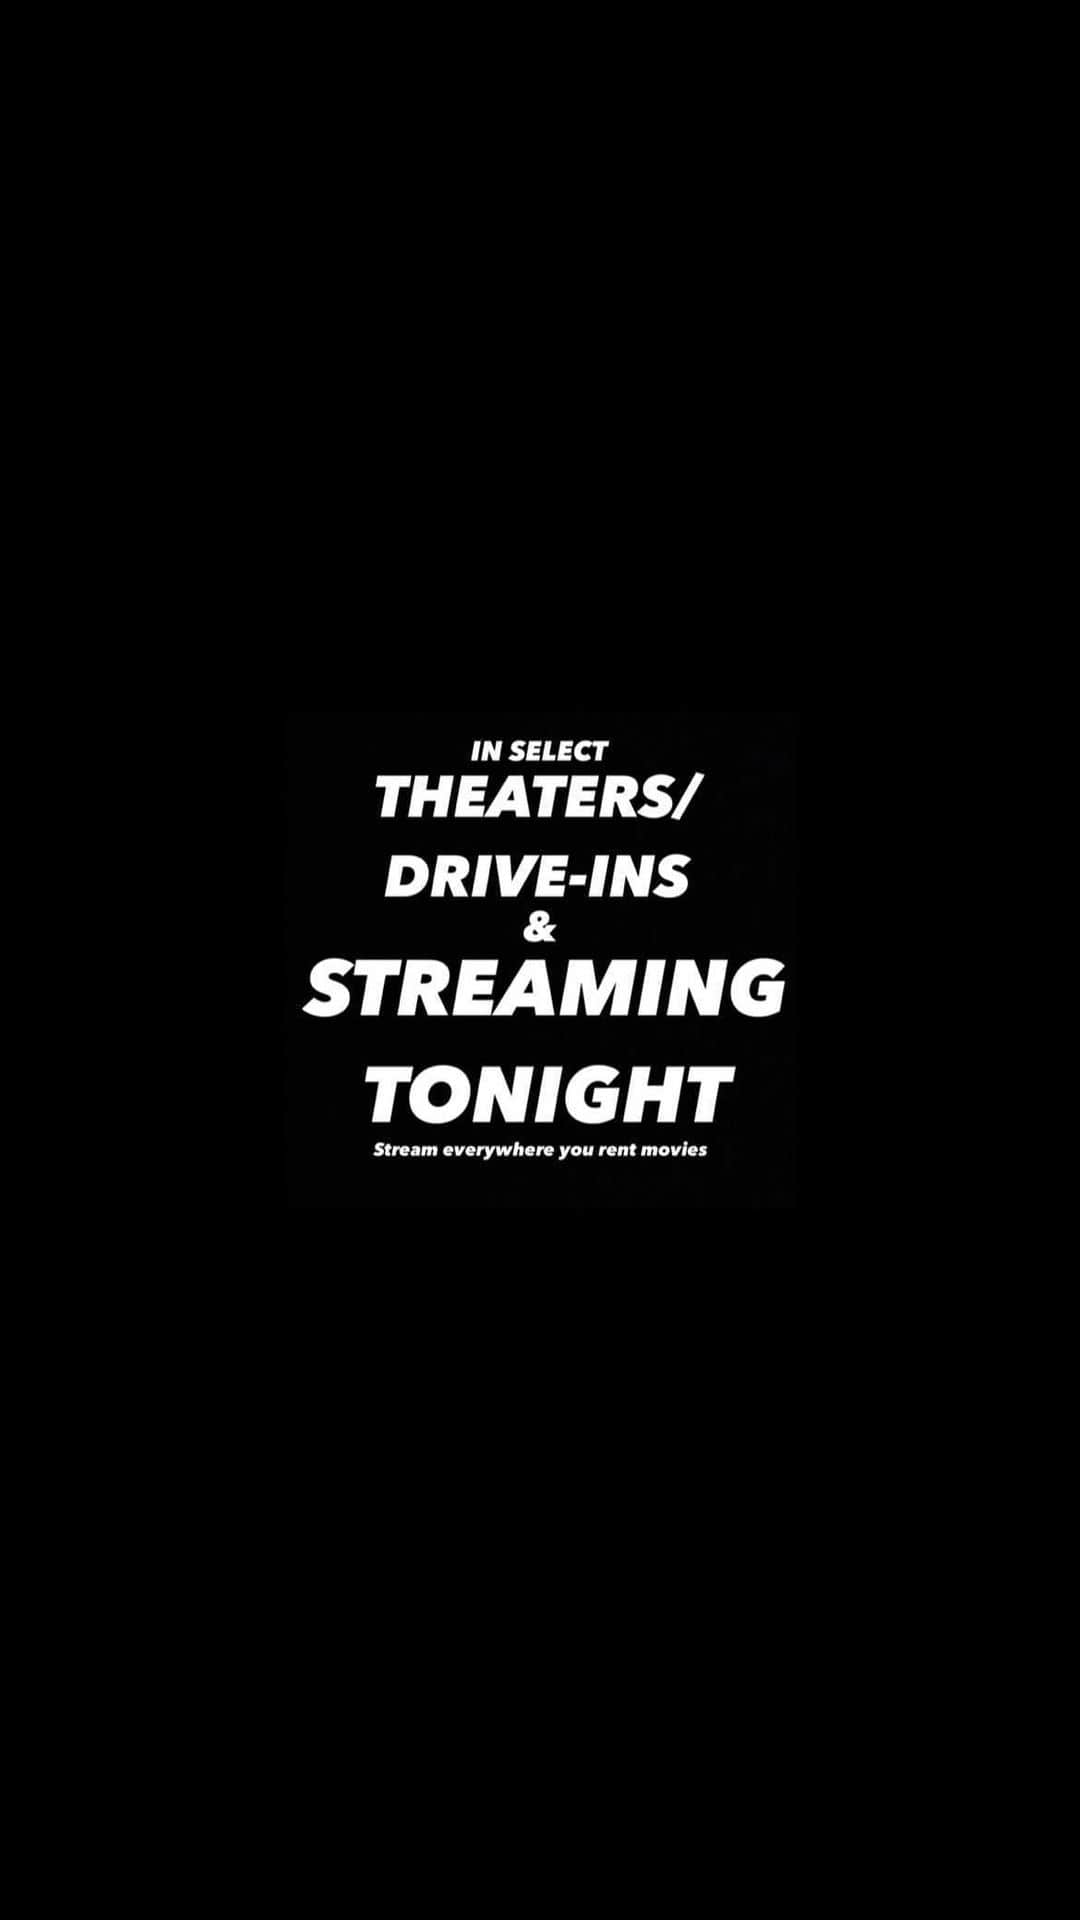 ネイト・パーカーのインスタグラム：「‼️HOURS AWAY!!!!! ‼️  𝙹𝚞𝚜𝚝𝚒𝚌𝚎 𝚒𝚜 𝙵𝚒𝚗𝚊𝚕𝚕𝚢 𝚘𝚗 𝚃𝚛𝚒𝚊𝚕  IN SELECT THEATERS  AND  AVAILABLE TO STREAM WHEREVER YOU RENT OR BUY MOVIES!  📽🎬🎟🎞🍿  *𝙰𝚕𝚜𝚘 𝚙𝚕𝚎𝚊𝚜𝚎 𝚜𝚞𝚙𝚙𝚘𝚛𝚝 𝚕𝚘𝚌𝚊𝚕 𝙱𝚕𝚊𝚌𝚔 𝙾𝚠𝚗𝚎𝚍 𝚛𝚎𝚜𝚝𝚊𝚞𝚛𝚊𝚗𝚝𝚜 𝚍𝚞𝚛𝚒𝚗𝚐 𝚢𝚘𝚞𝚛 𝚠𝚊𝚝𝚌𝚑 𝚙𝚊𝚛𝚝𝚒𝚎𝚜 𝚏𝚘𝚛 𝚝𝚑𝚎 𝚏𝚒𝚕𝚖.   #americanskinmovie #blacklivesmatter #blm #blackexcellence #blackactor #filmmaking #blackart #blackmovie #blackfilmsmatter #blackproducer #blackmedia #blackfilm #blackcinemas #cinema #womeninfilm #movietheater #cinema #movie #film #movies #movienight #movietime #films #movietheatre #moviecollection #movieworld #movielover  #theater #movieroom #americanskinmovie」